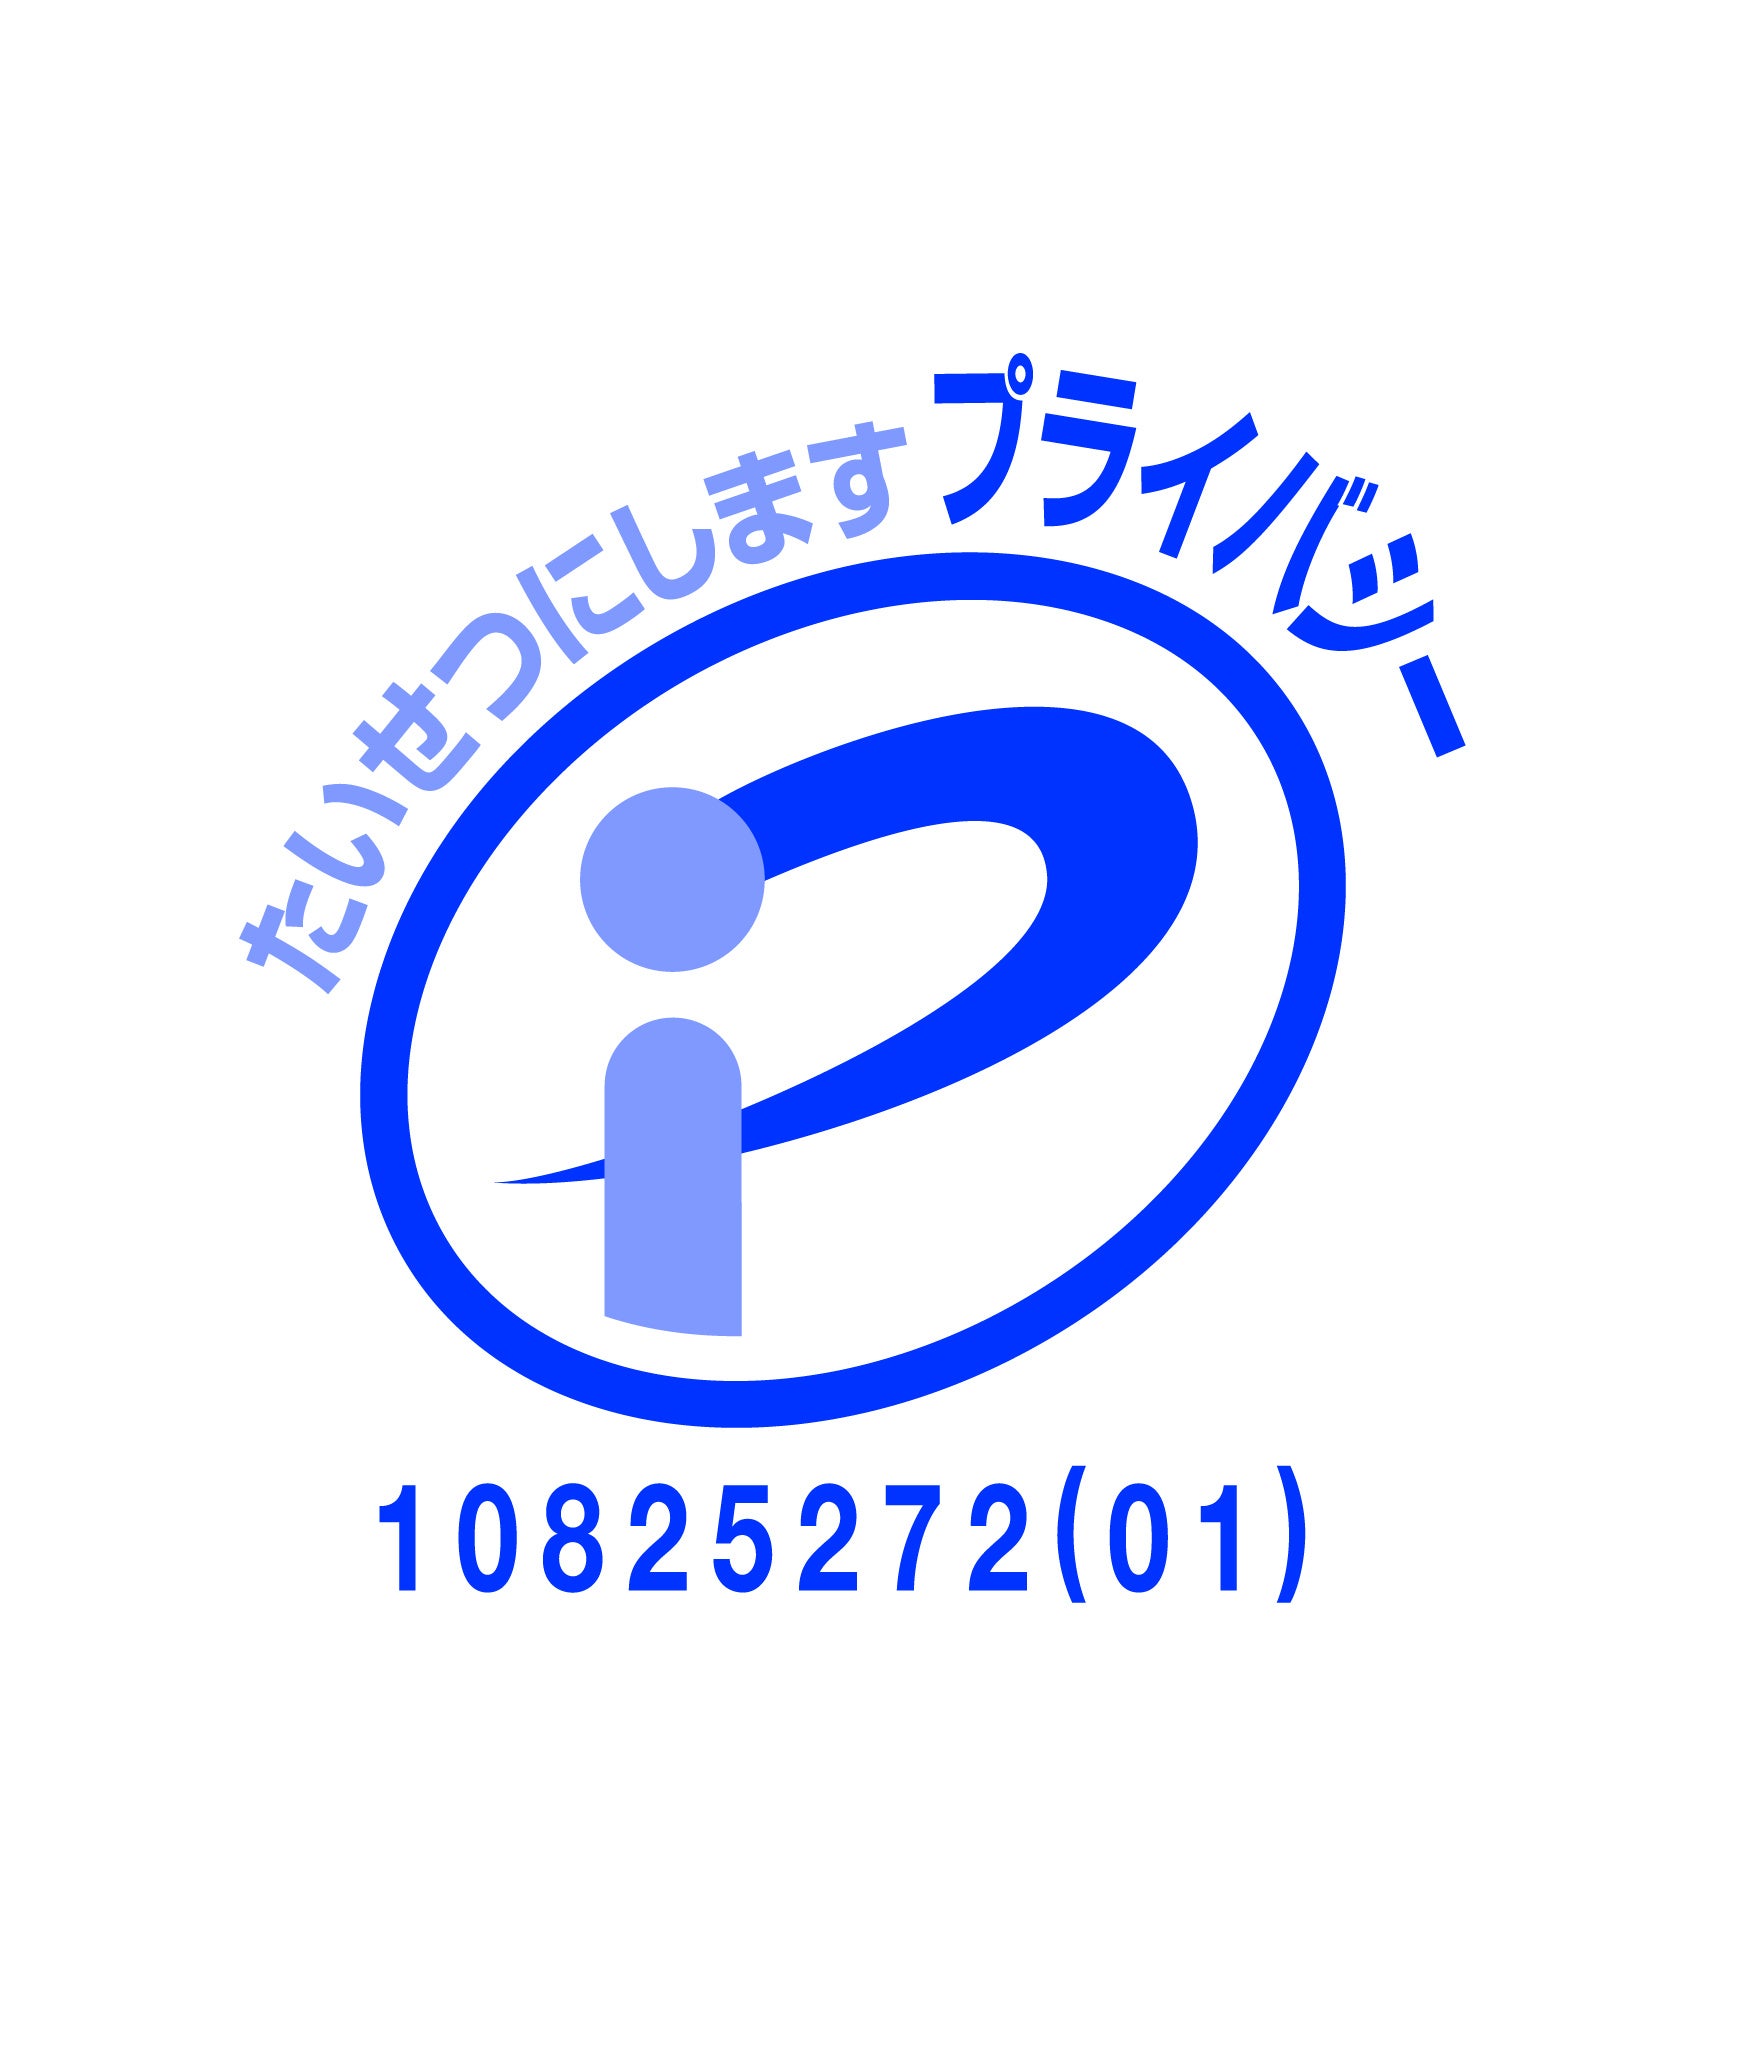 【株式会社ObotAI】プライバシーマーク（Pマーク）取得のお知らせ